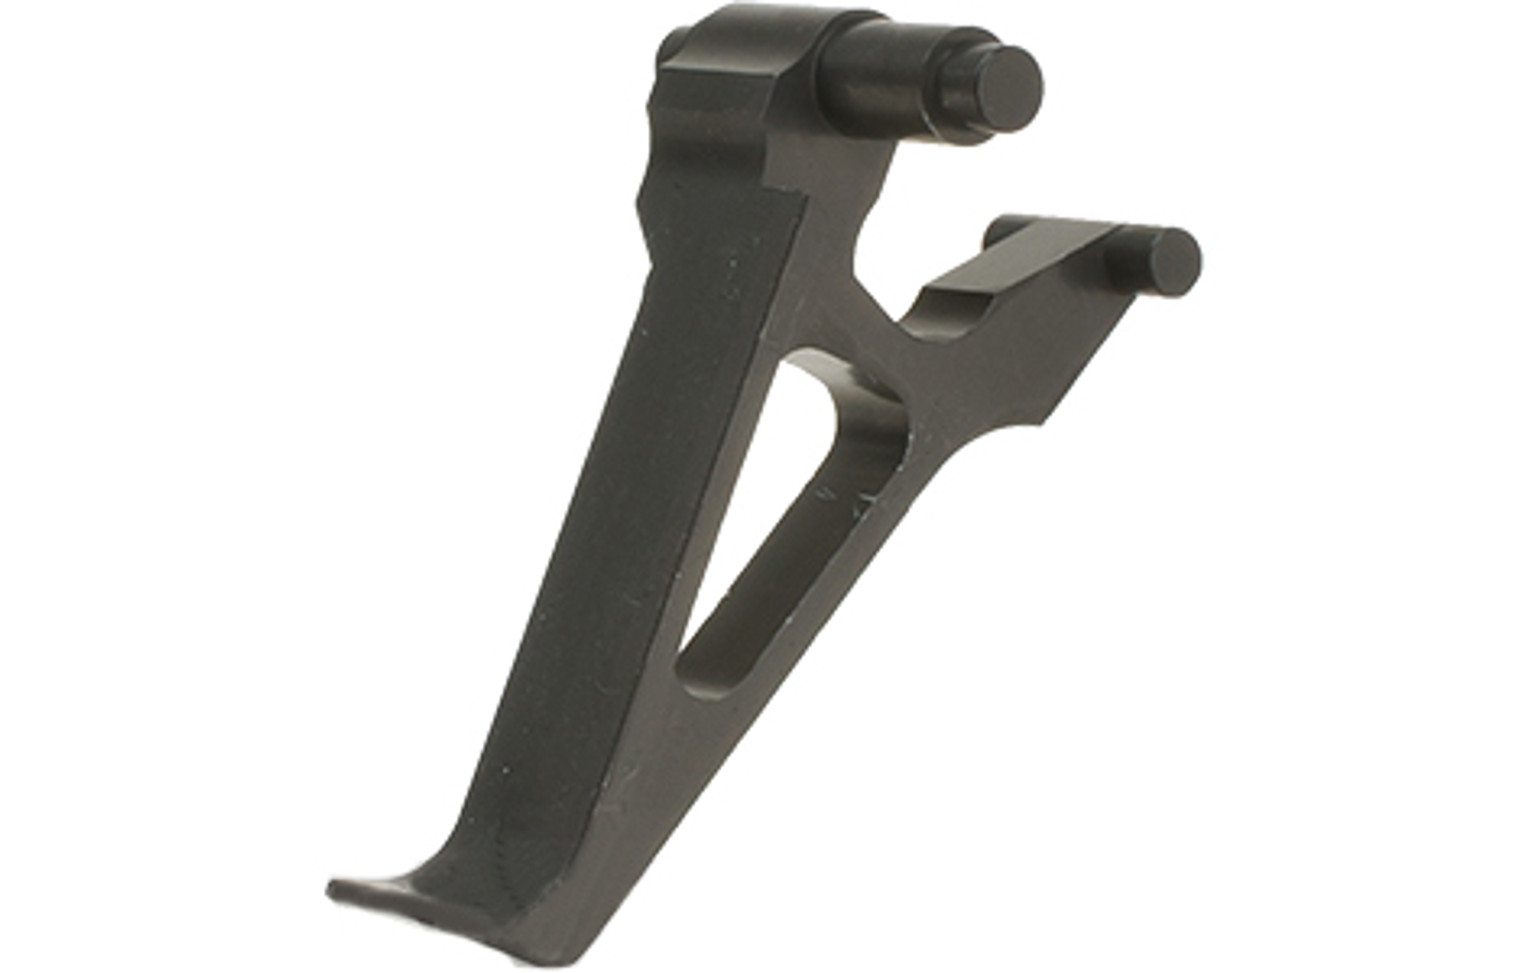 Retro Arms CZ Custom CNC Aluminum Trigger for AK Series Airsoft AEG Rifles - Black